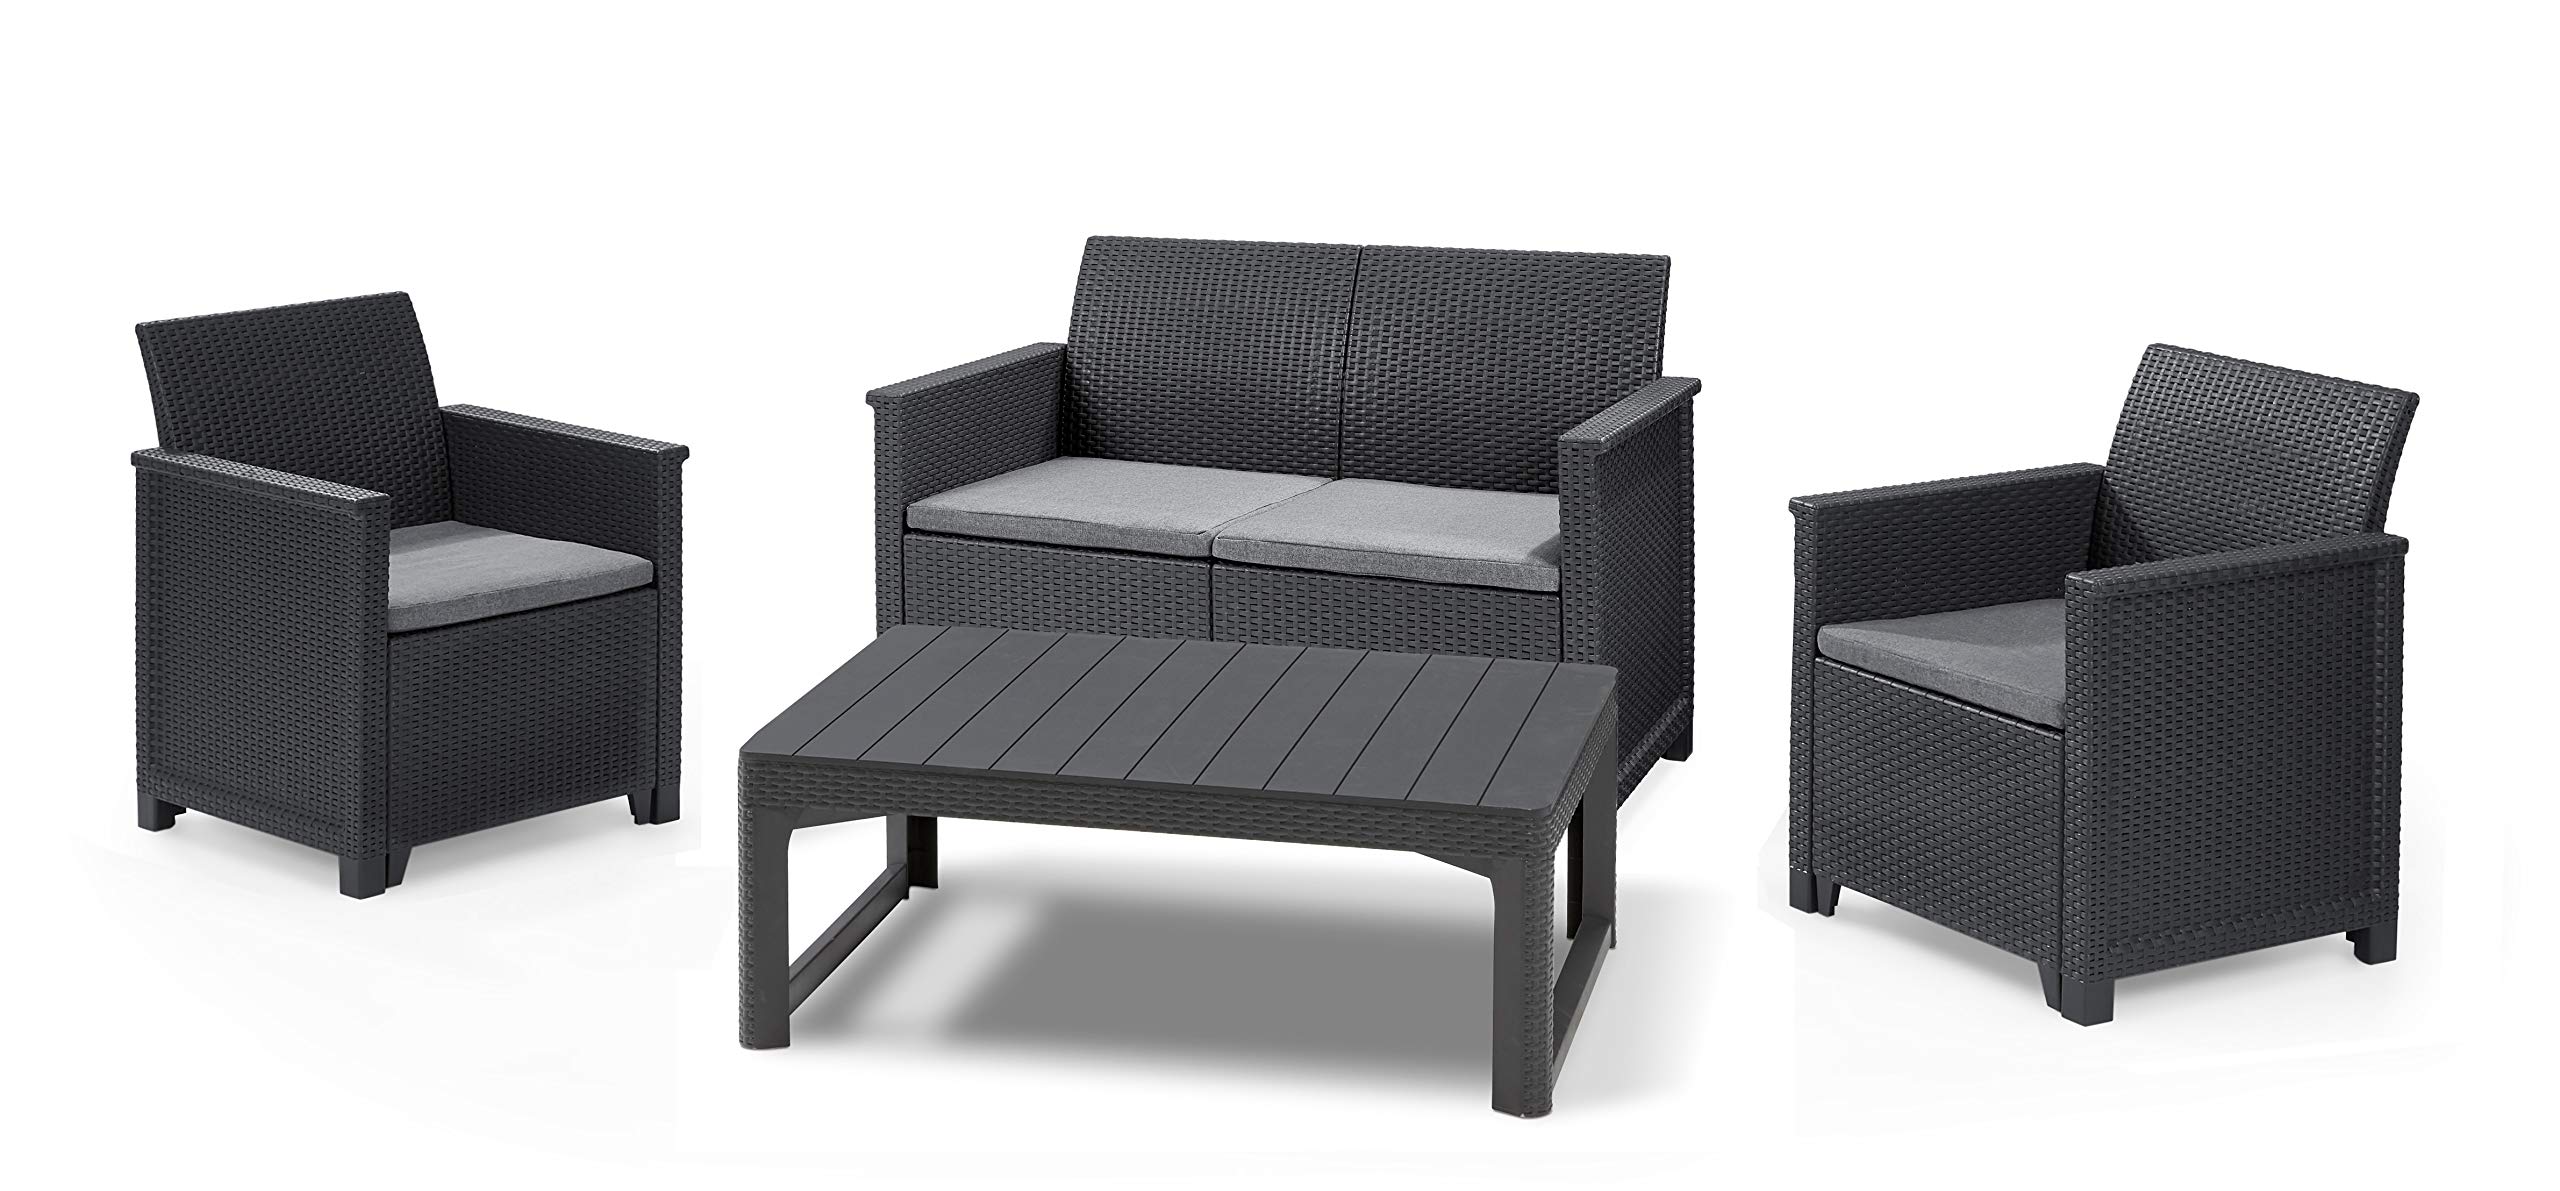 Koll Living Garden Lounge-Set mit Tisch, 4-TLG. Graphit, 2-Sitzer Sofa, 2 Sessel & höhenverstellbarer Tisch - ansprechende Sitzgruppe in naturgetreuer Rattanoptik